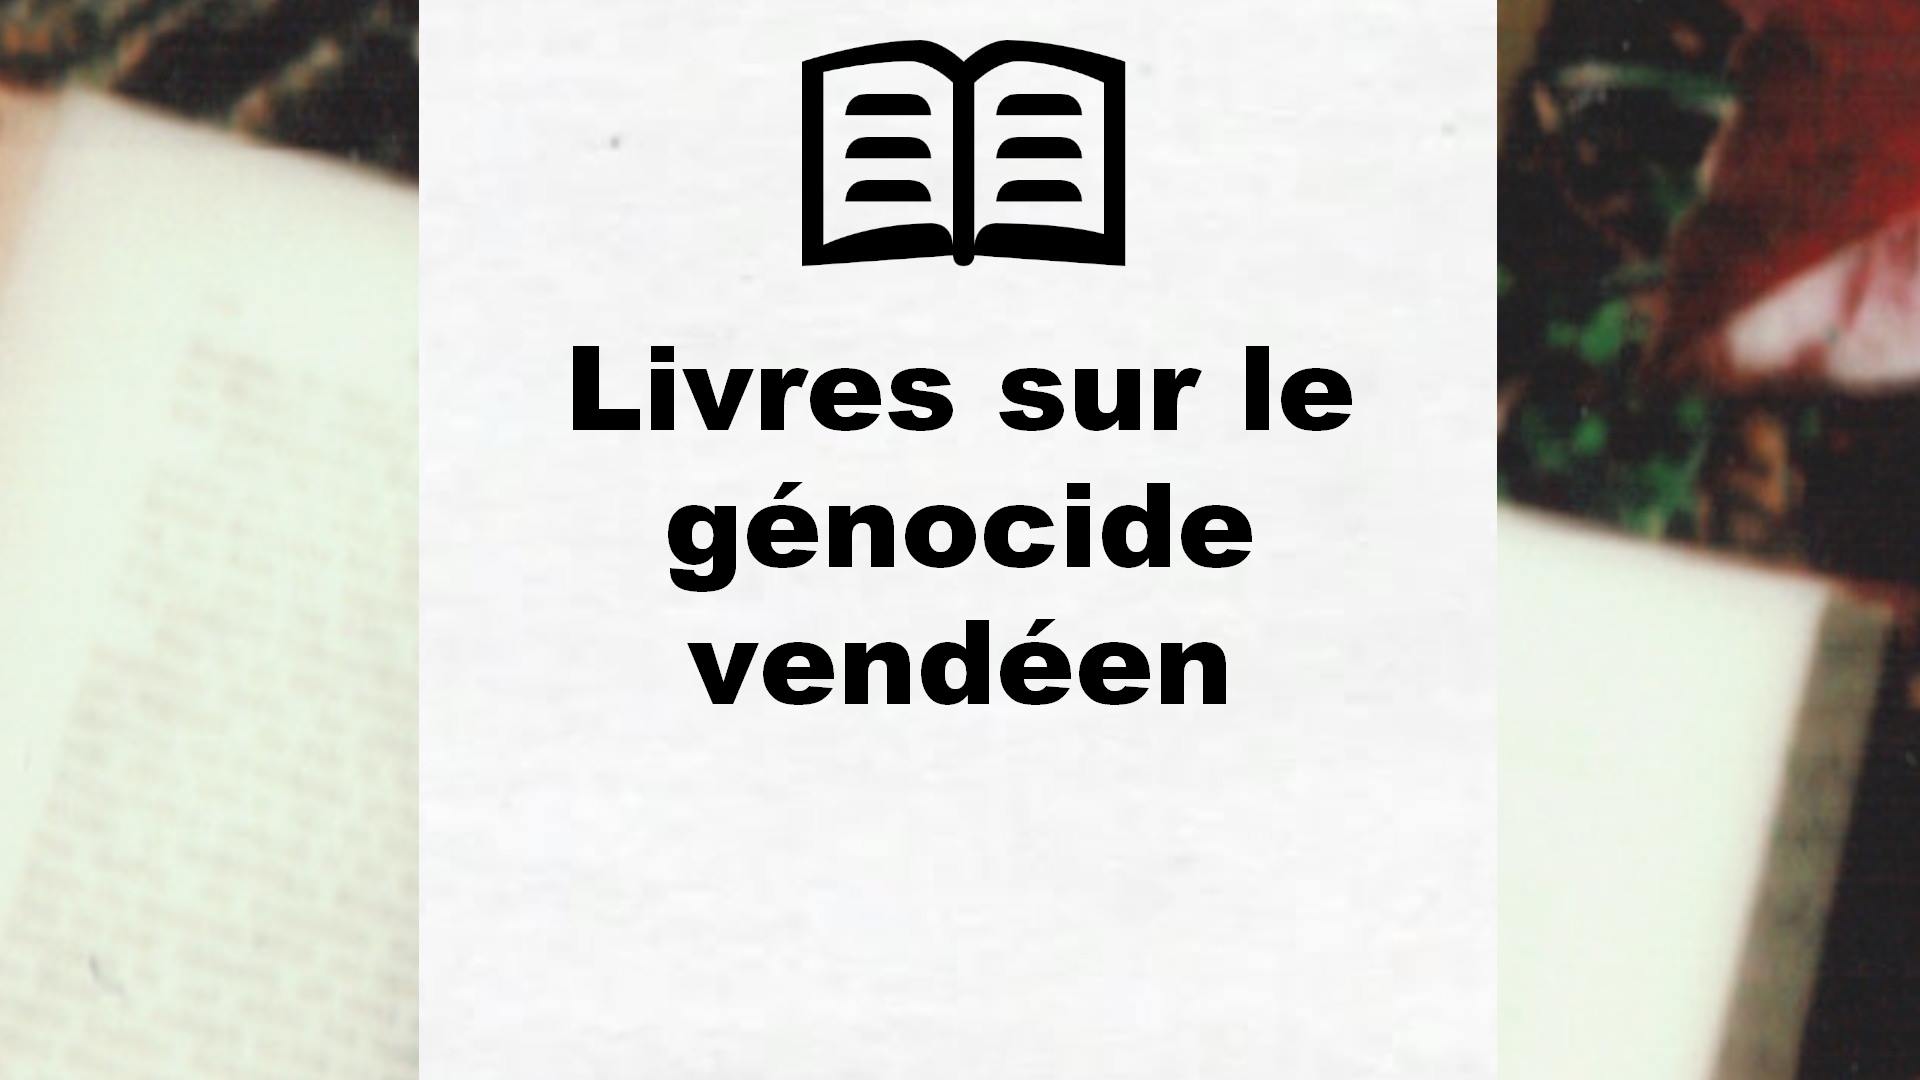 Livres sur le génocide vendéen